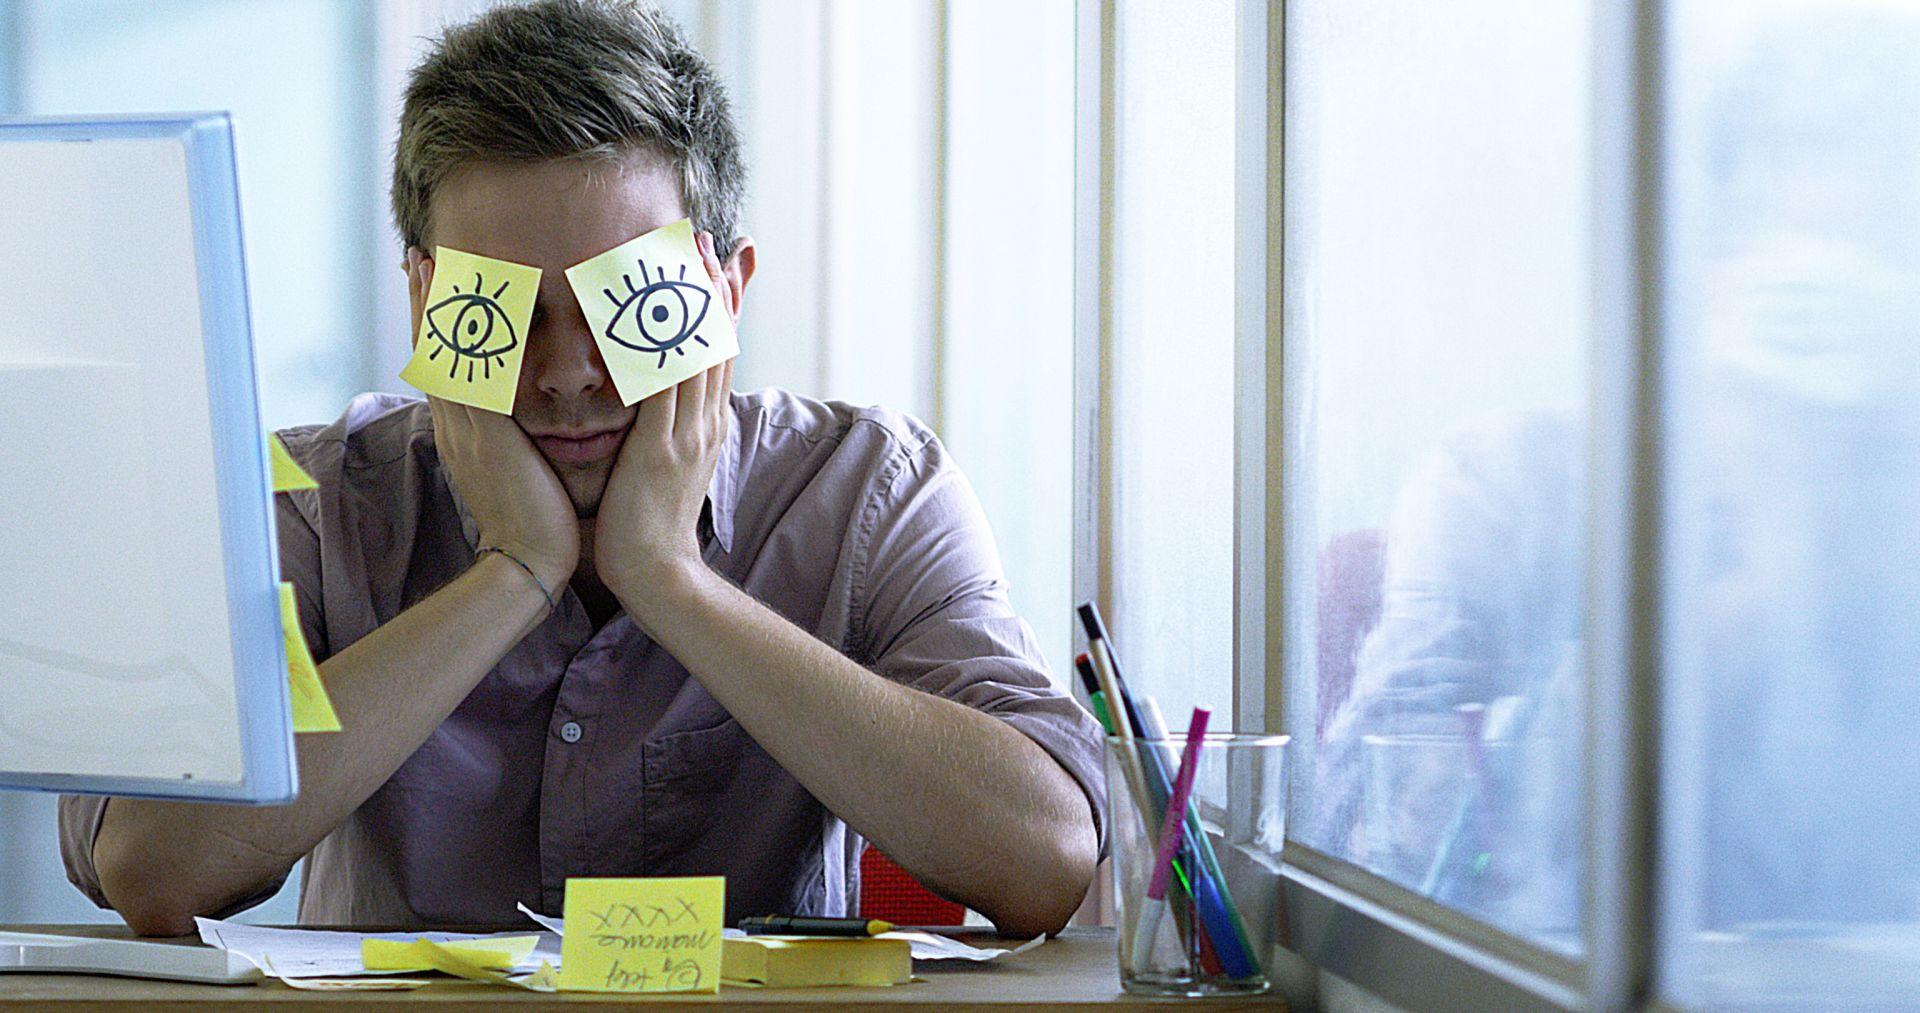 Ein junger Angestellter schläft im Büro und versteckt sich mit Posits in den Augen